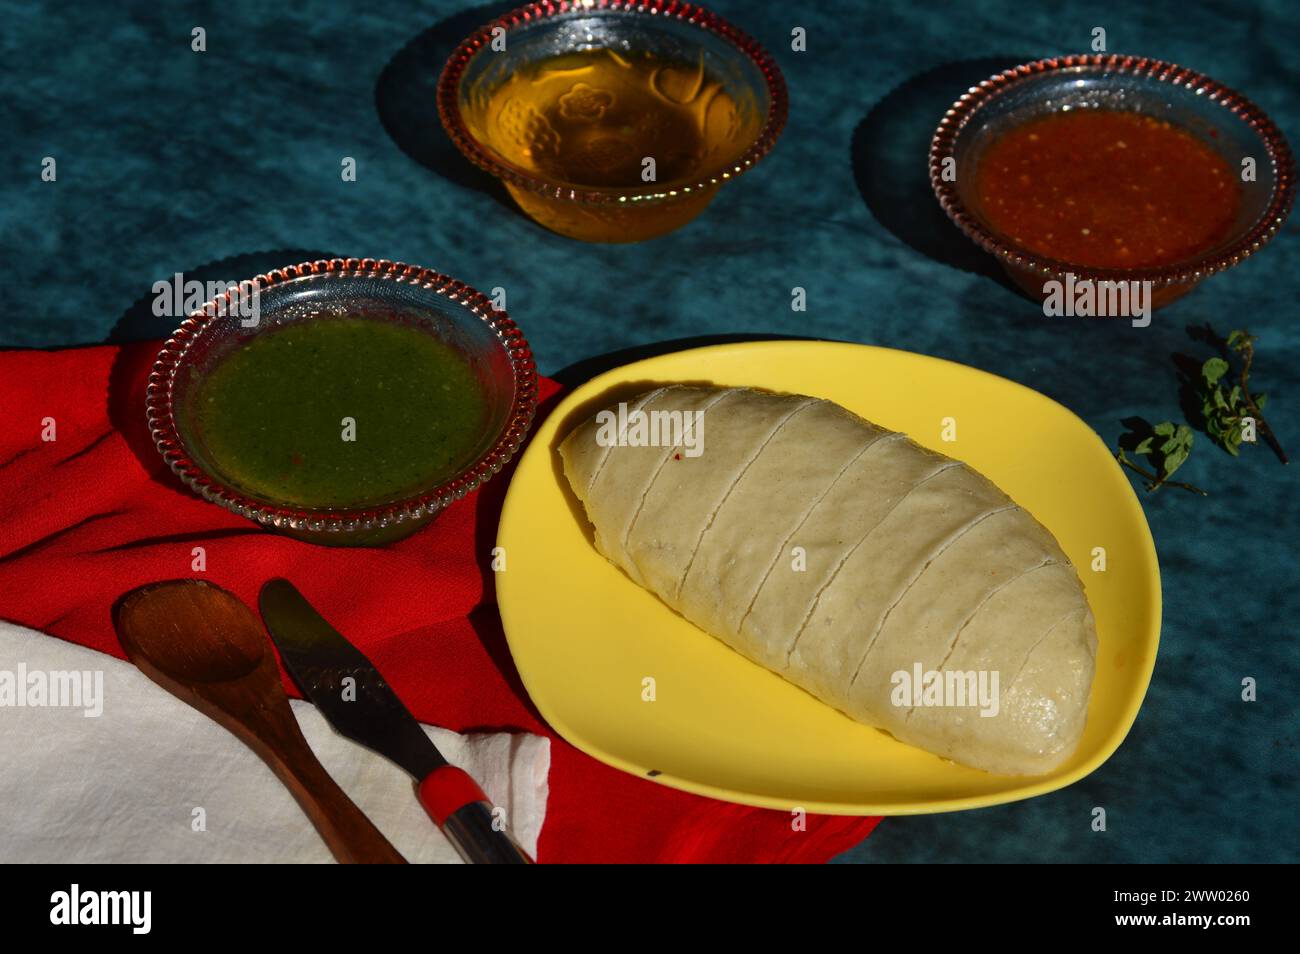 Siddu, uno speciale piatto tradizionale dell'Himachal Pradesh. È un pane di farina di grano al vapore ripieno di lenticchie nere, frutta secca, ecc. Foto Stock